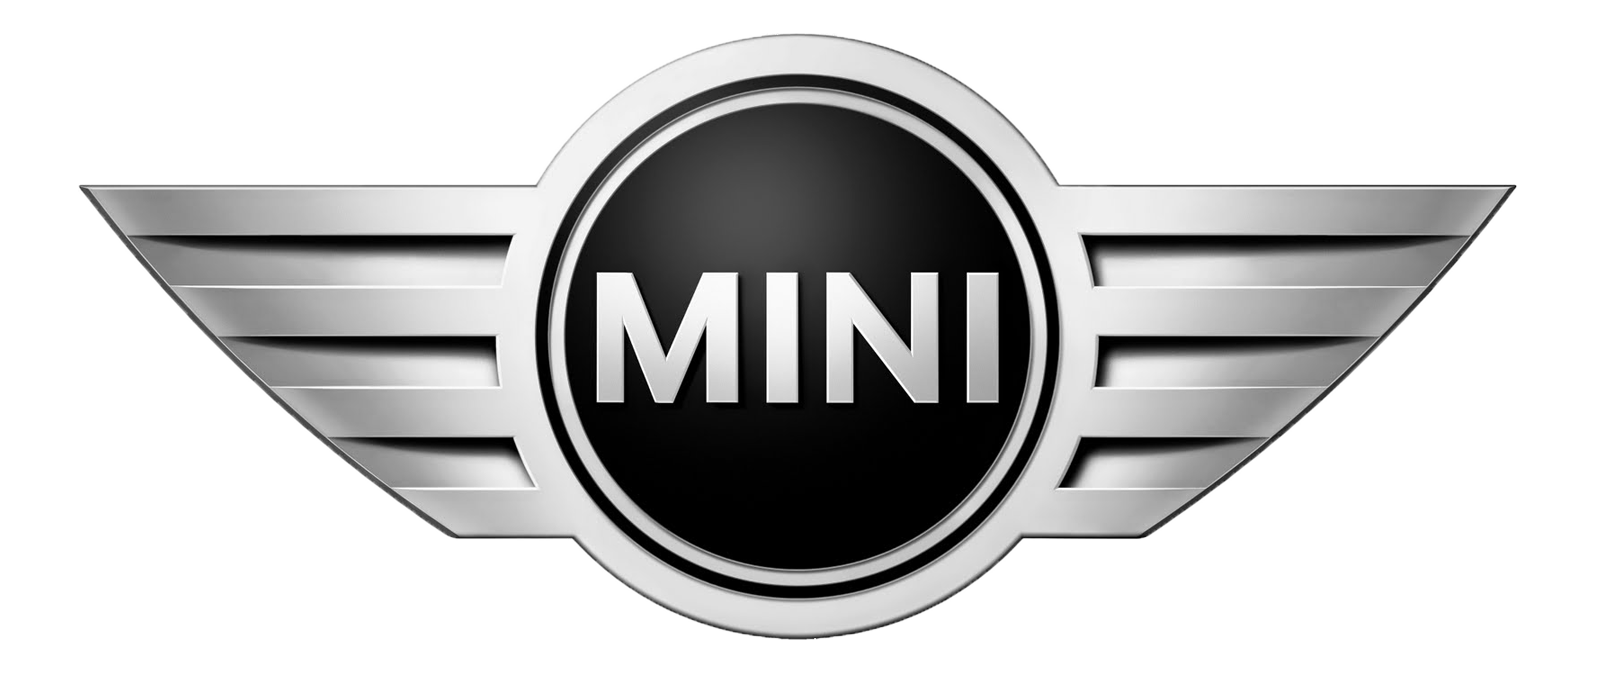 mini-one